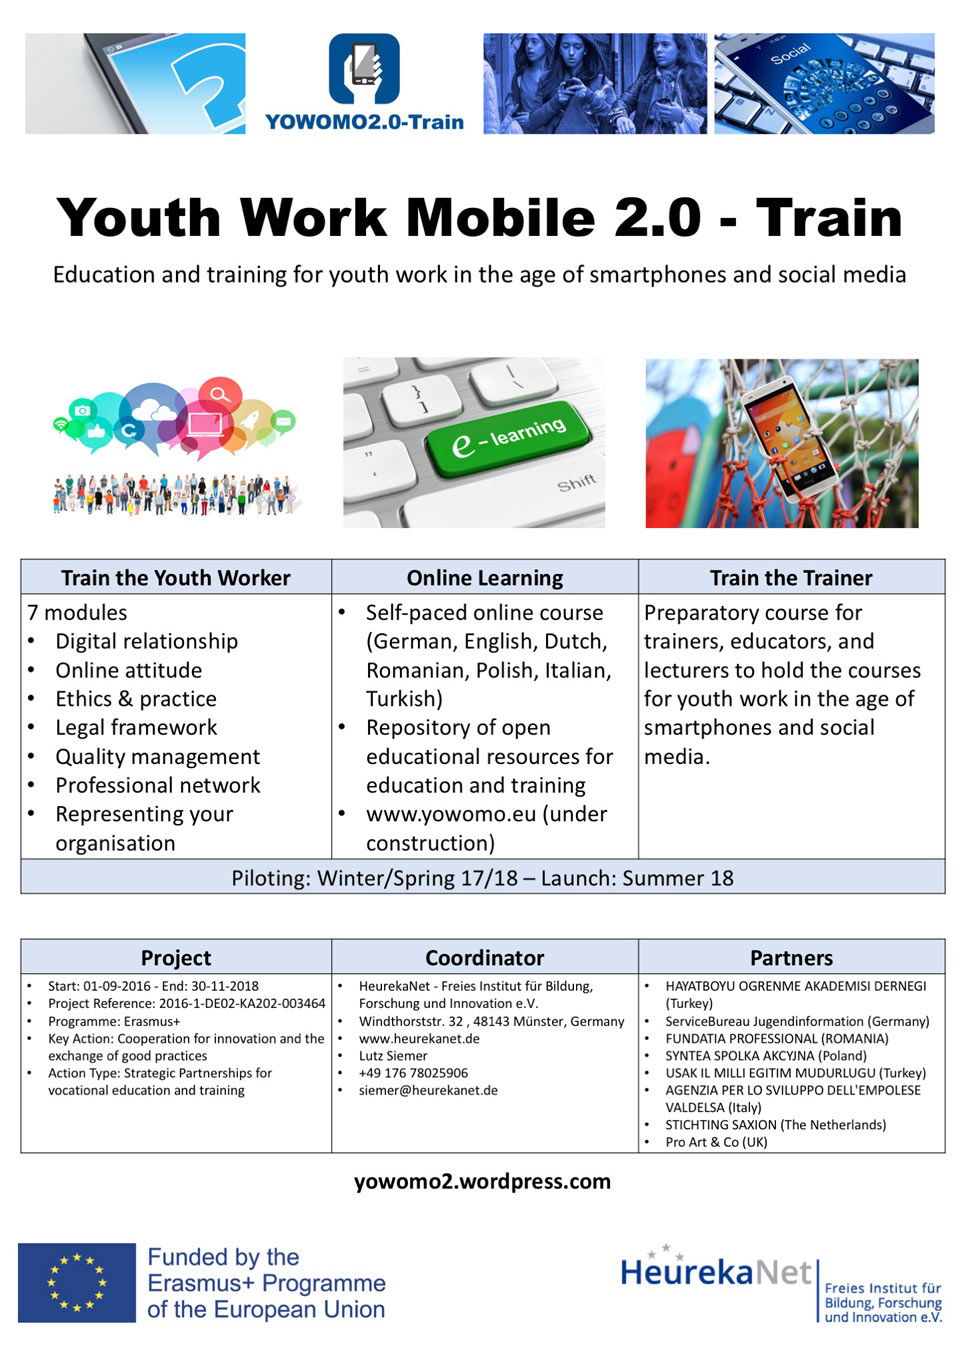 18.12.2017 - YOWOMO2.0-Train auf der „Digital Youth Work“ Konferenz präsentiert und diskutiert